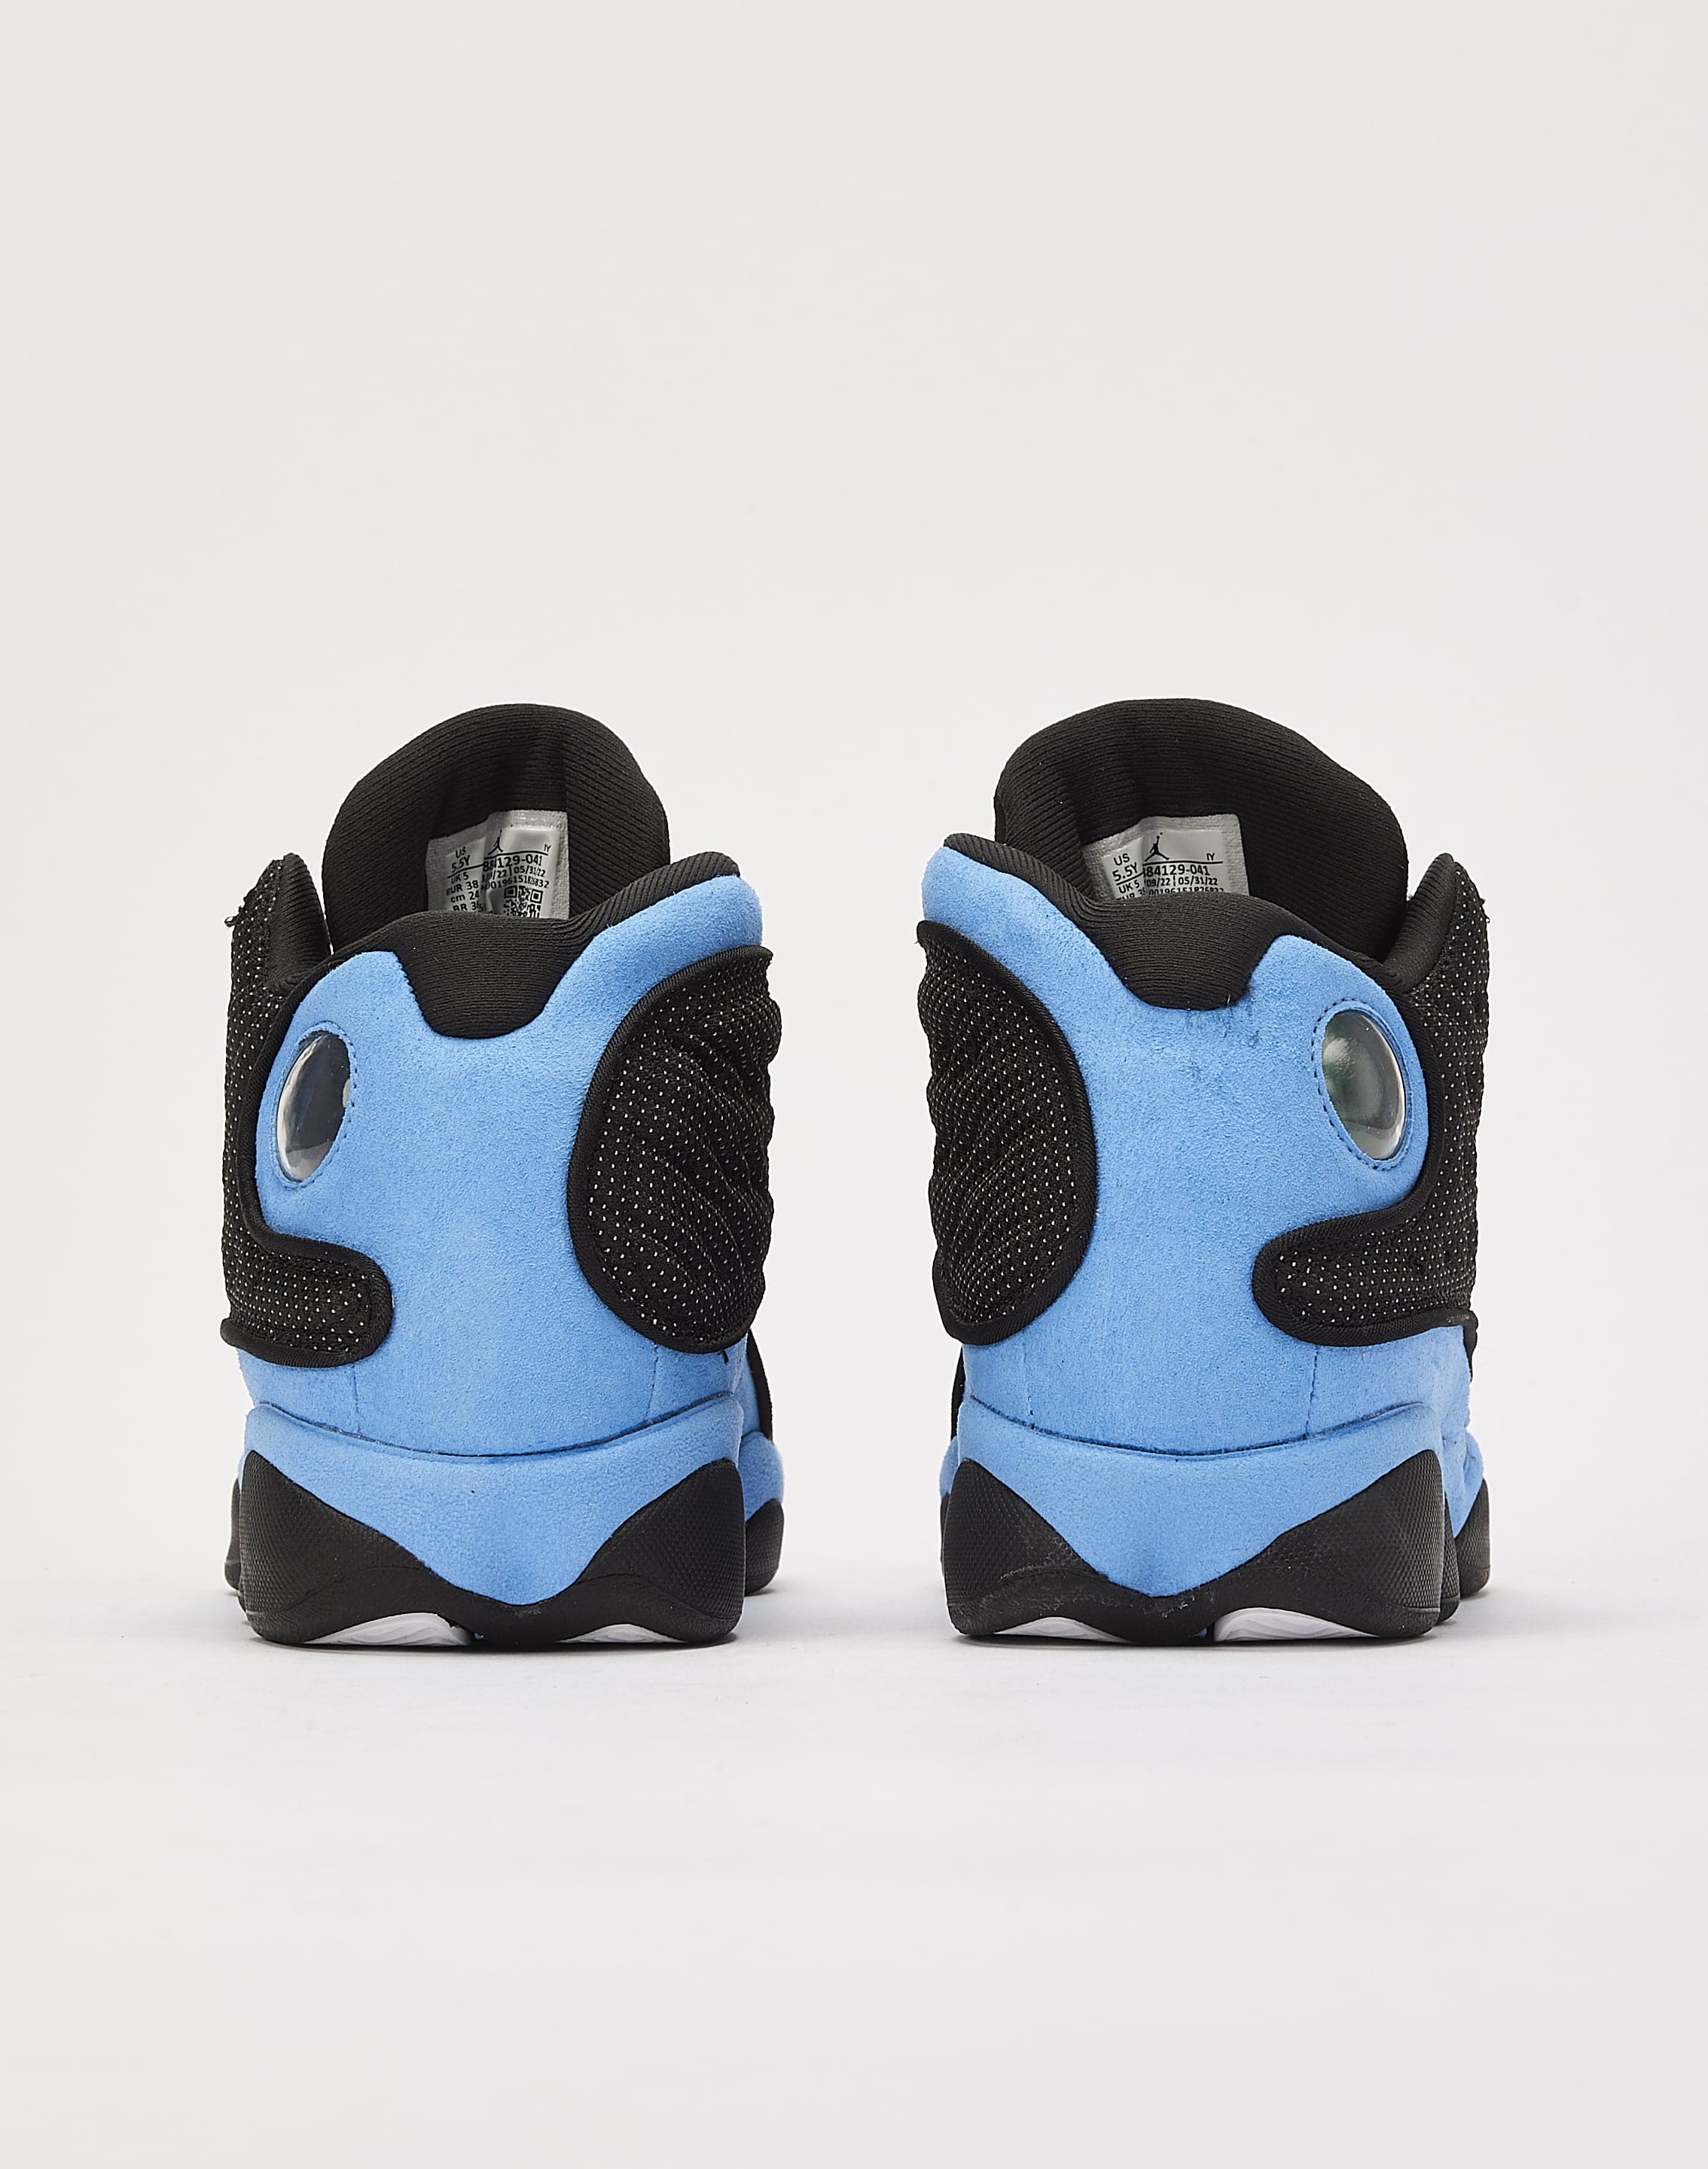  Jordan mens 13 Retro Shoes, Black/University Blue/Black, 7.5